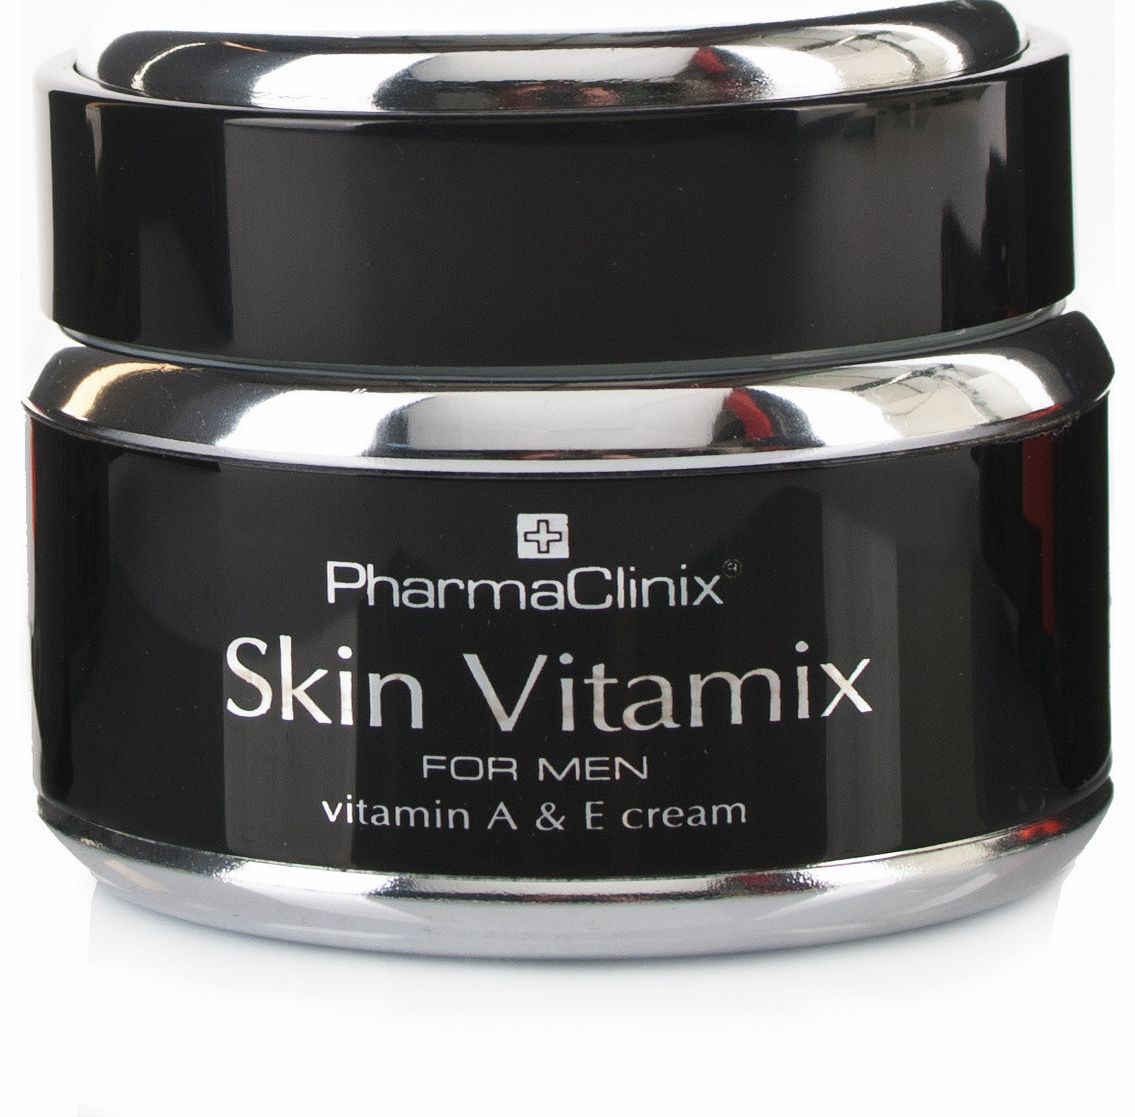 Skin Vitamix For Men